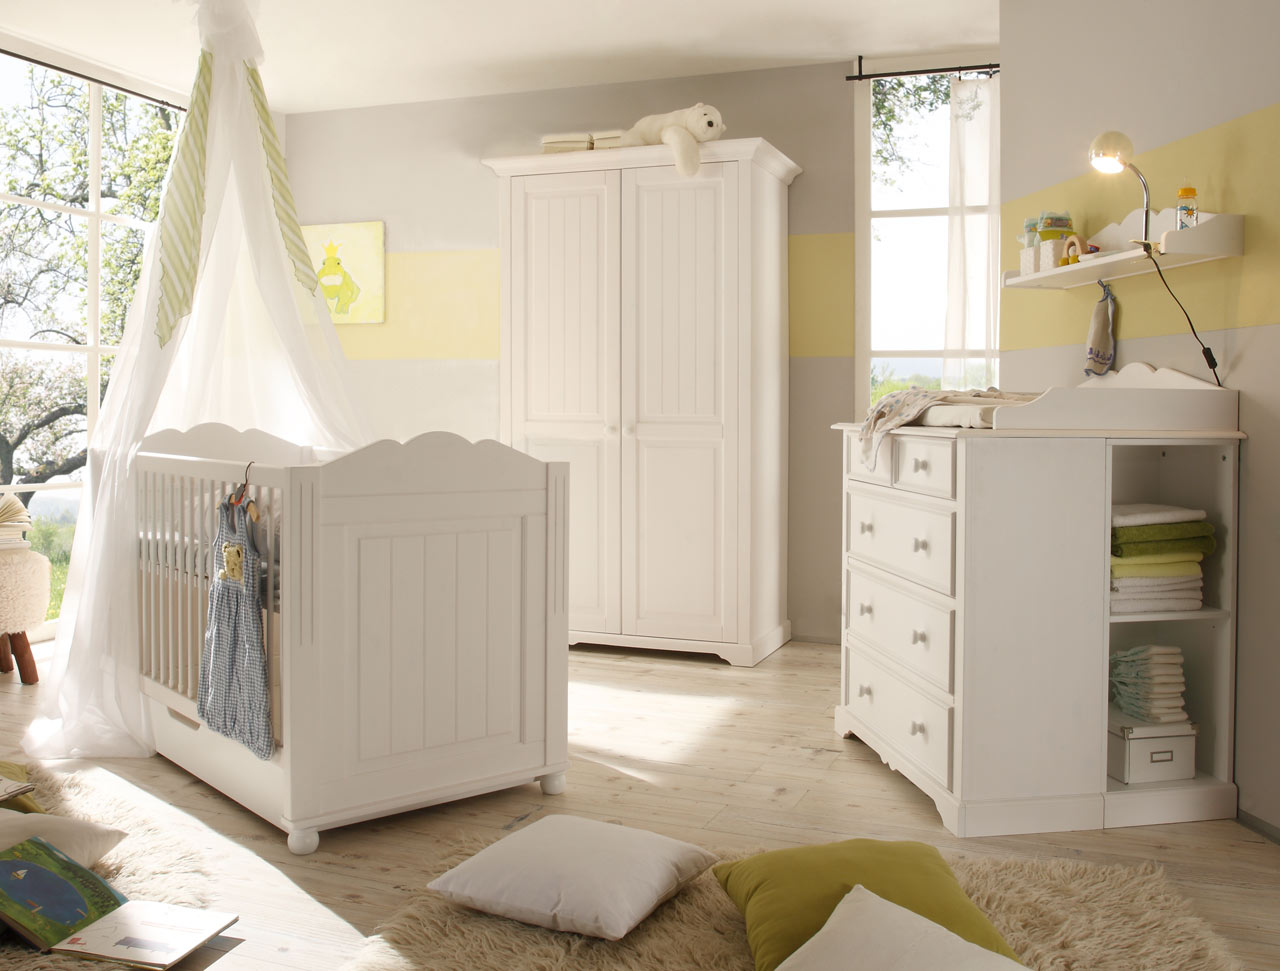 Begabino Babyzimmer 4-tlg. in Kiefer massiv, weiß lackiert, Drehtürenschrank, Bett mit Liegefläche 70x140 cm und Kommode mit Wickelaufsatz